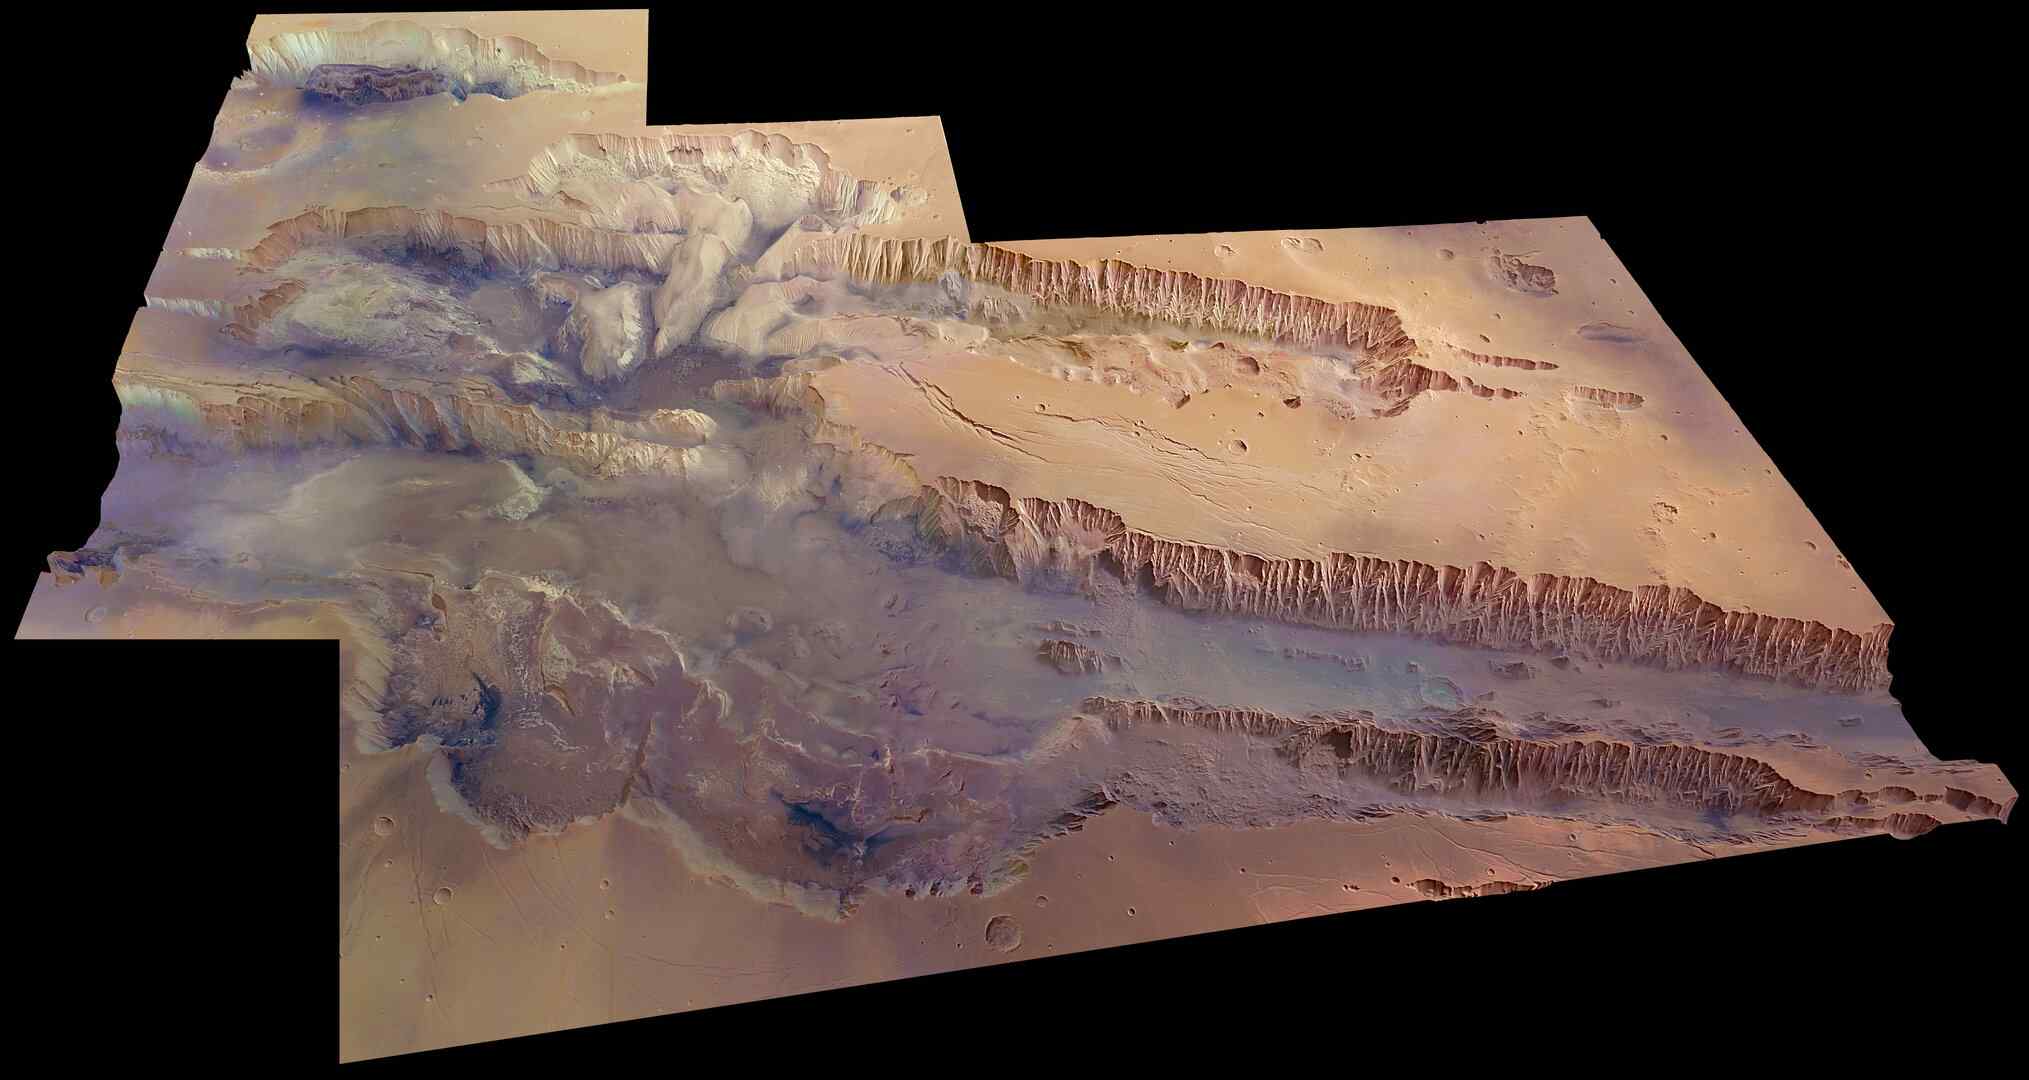 Российские ученые открыли в одном из марсианских хаосов огромную область свободного льда